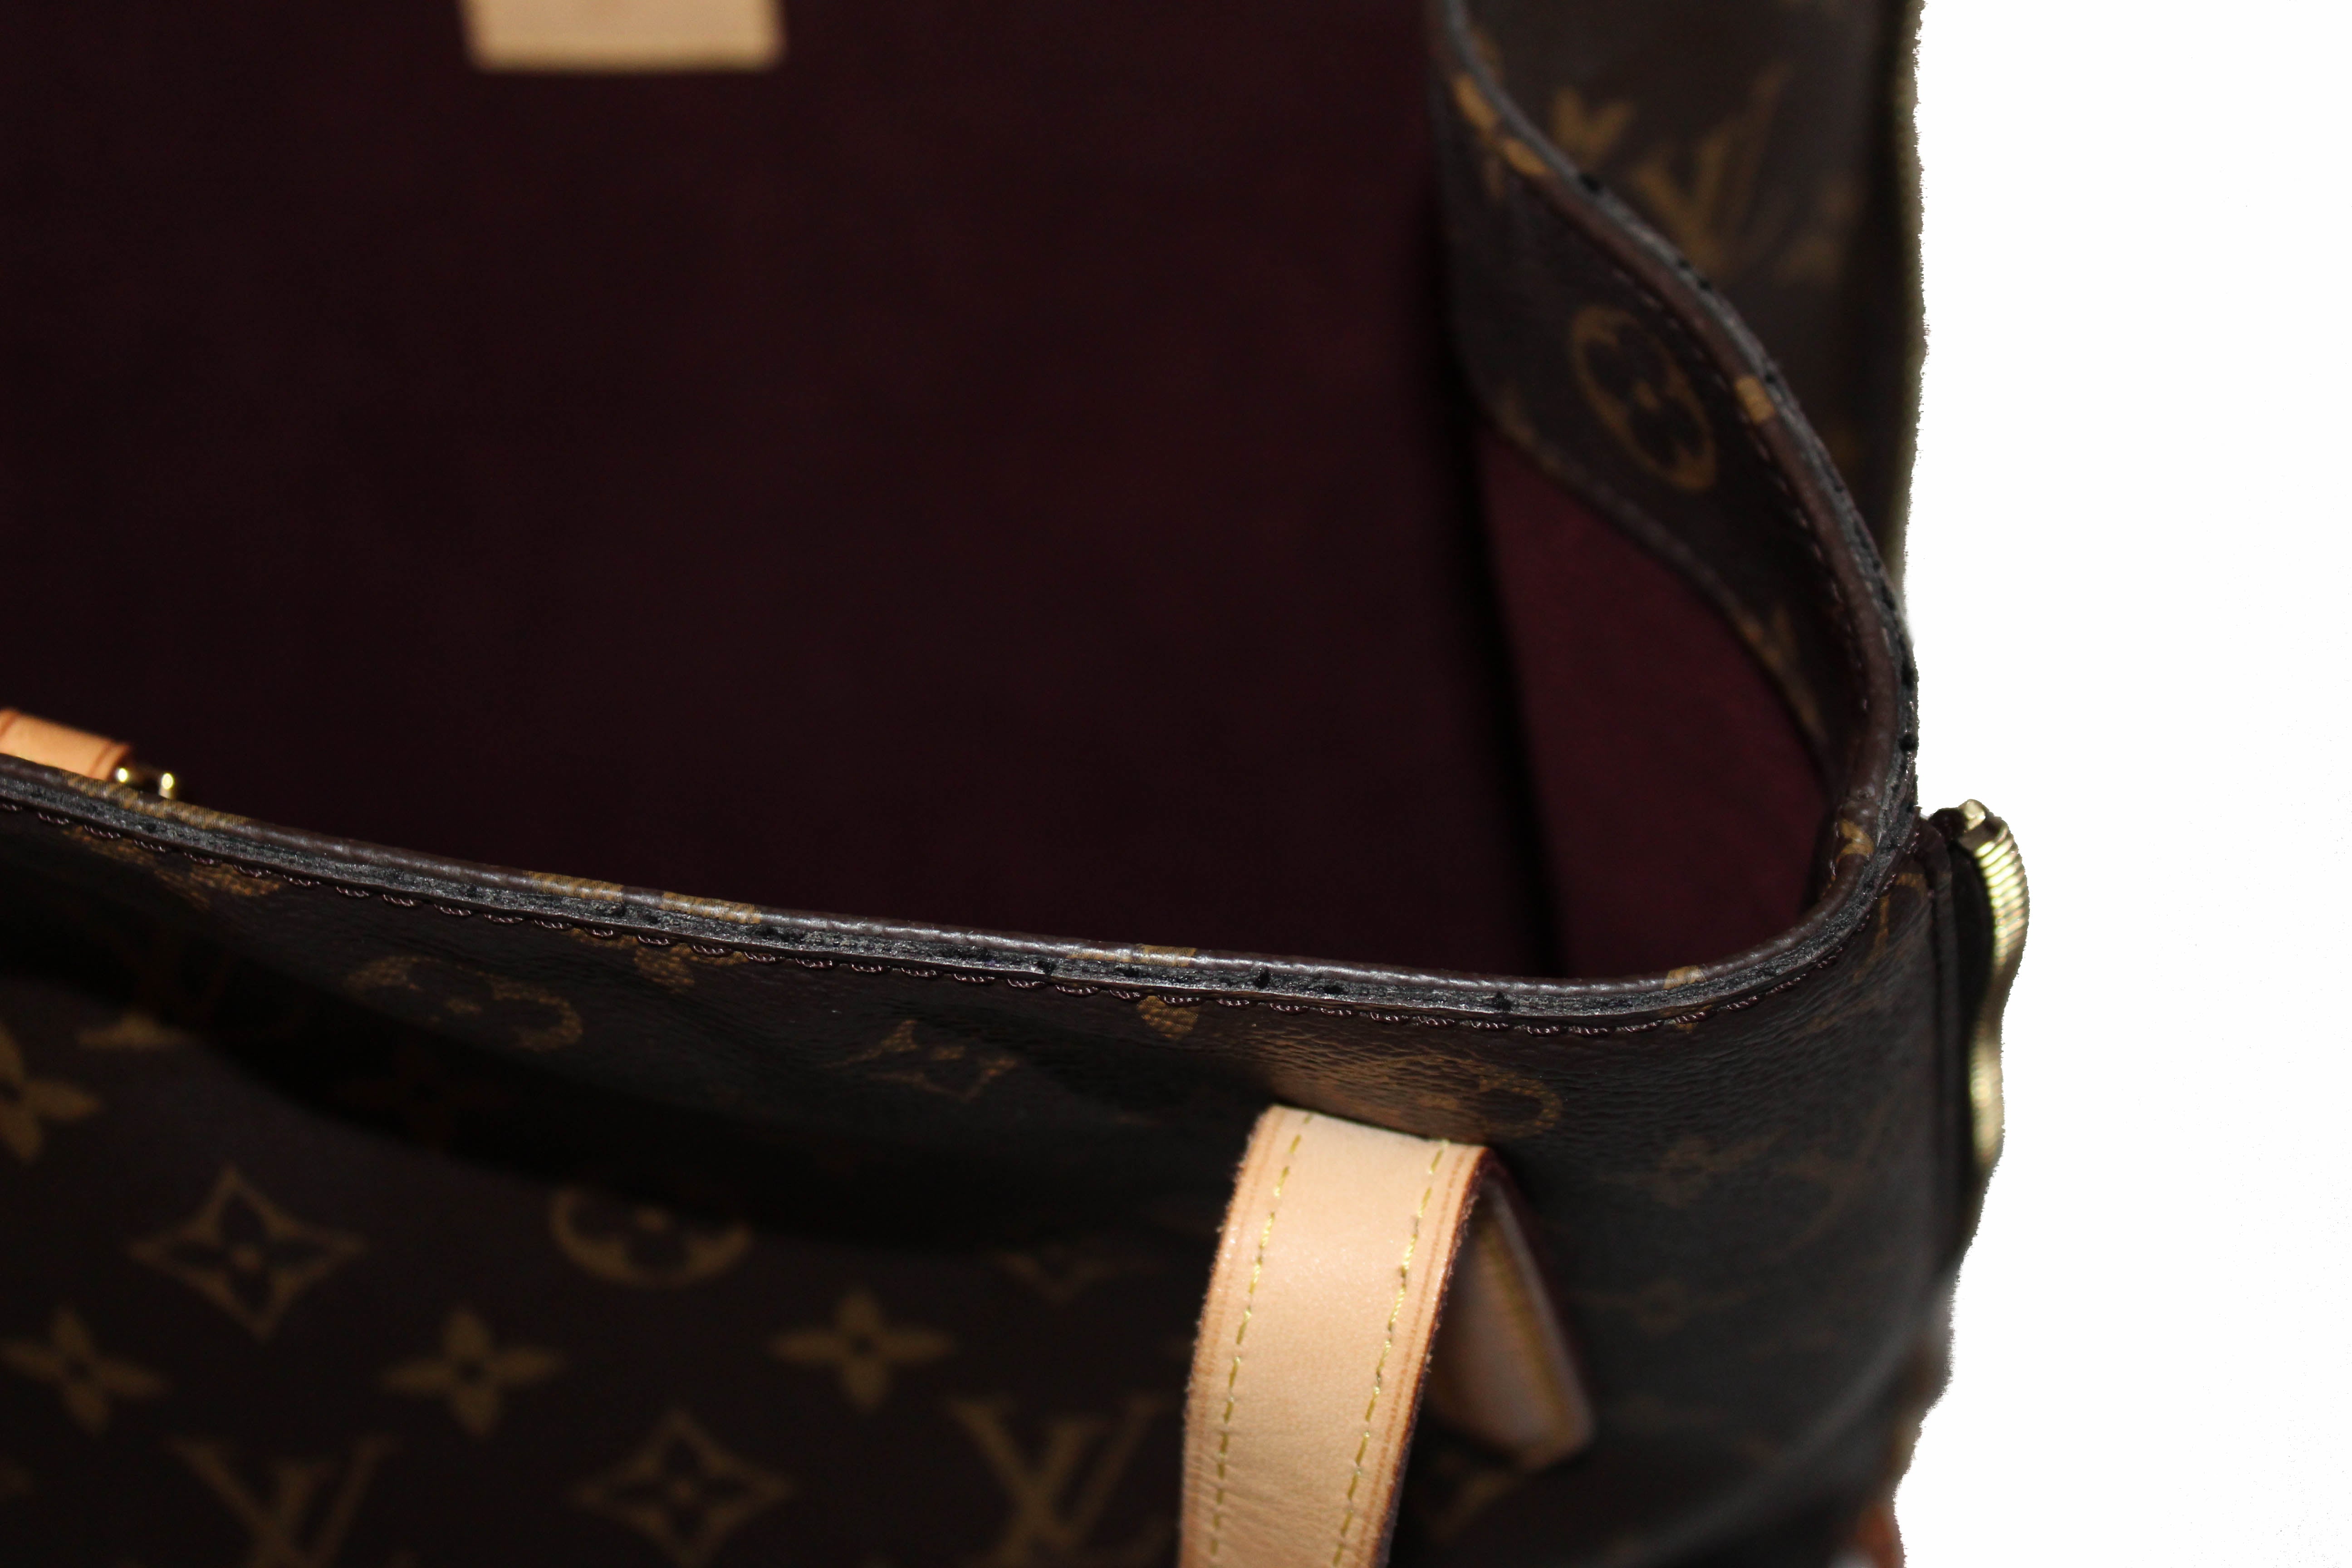 Authentic Louis Vuitton Classic Monogram Voltaire Tote Shoulder Bag